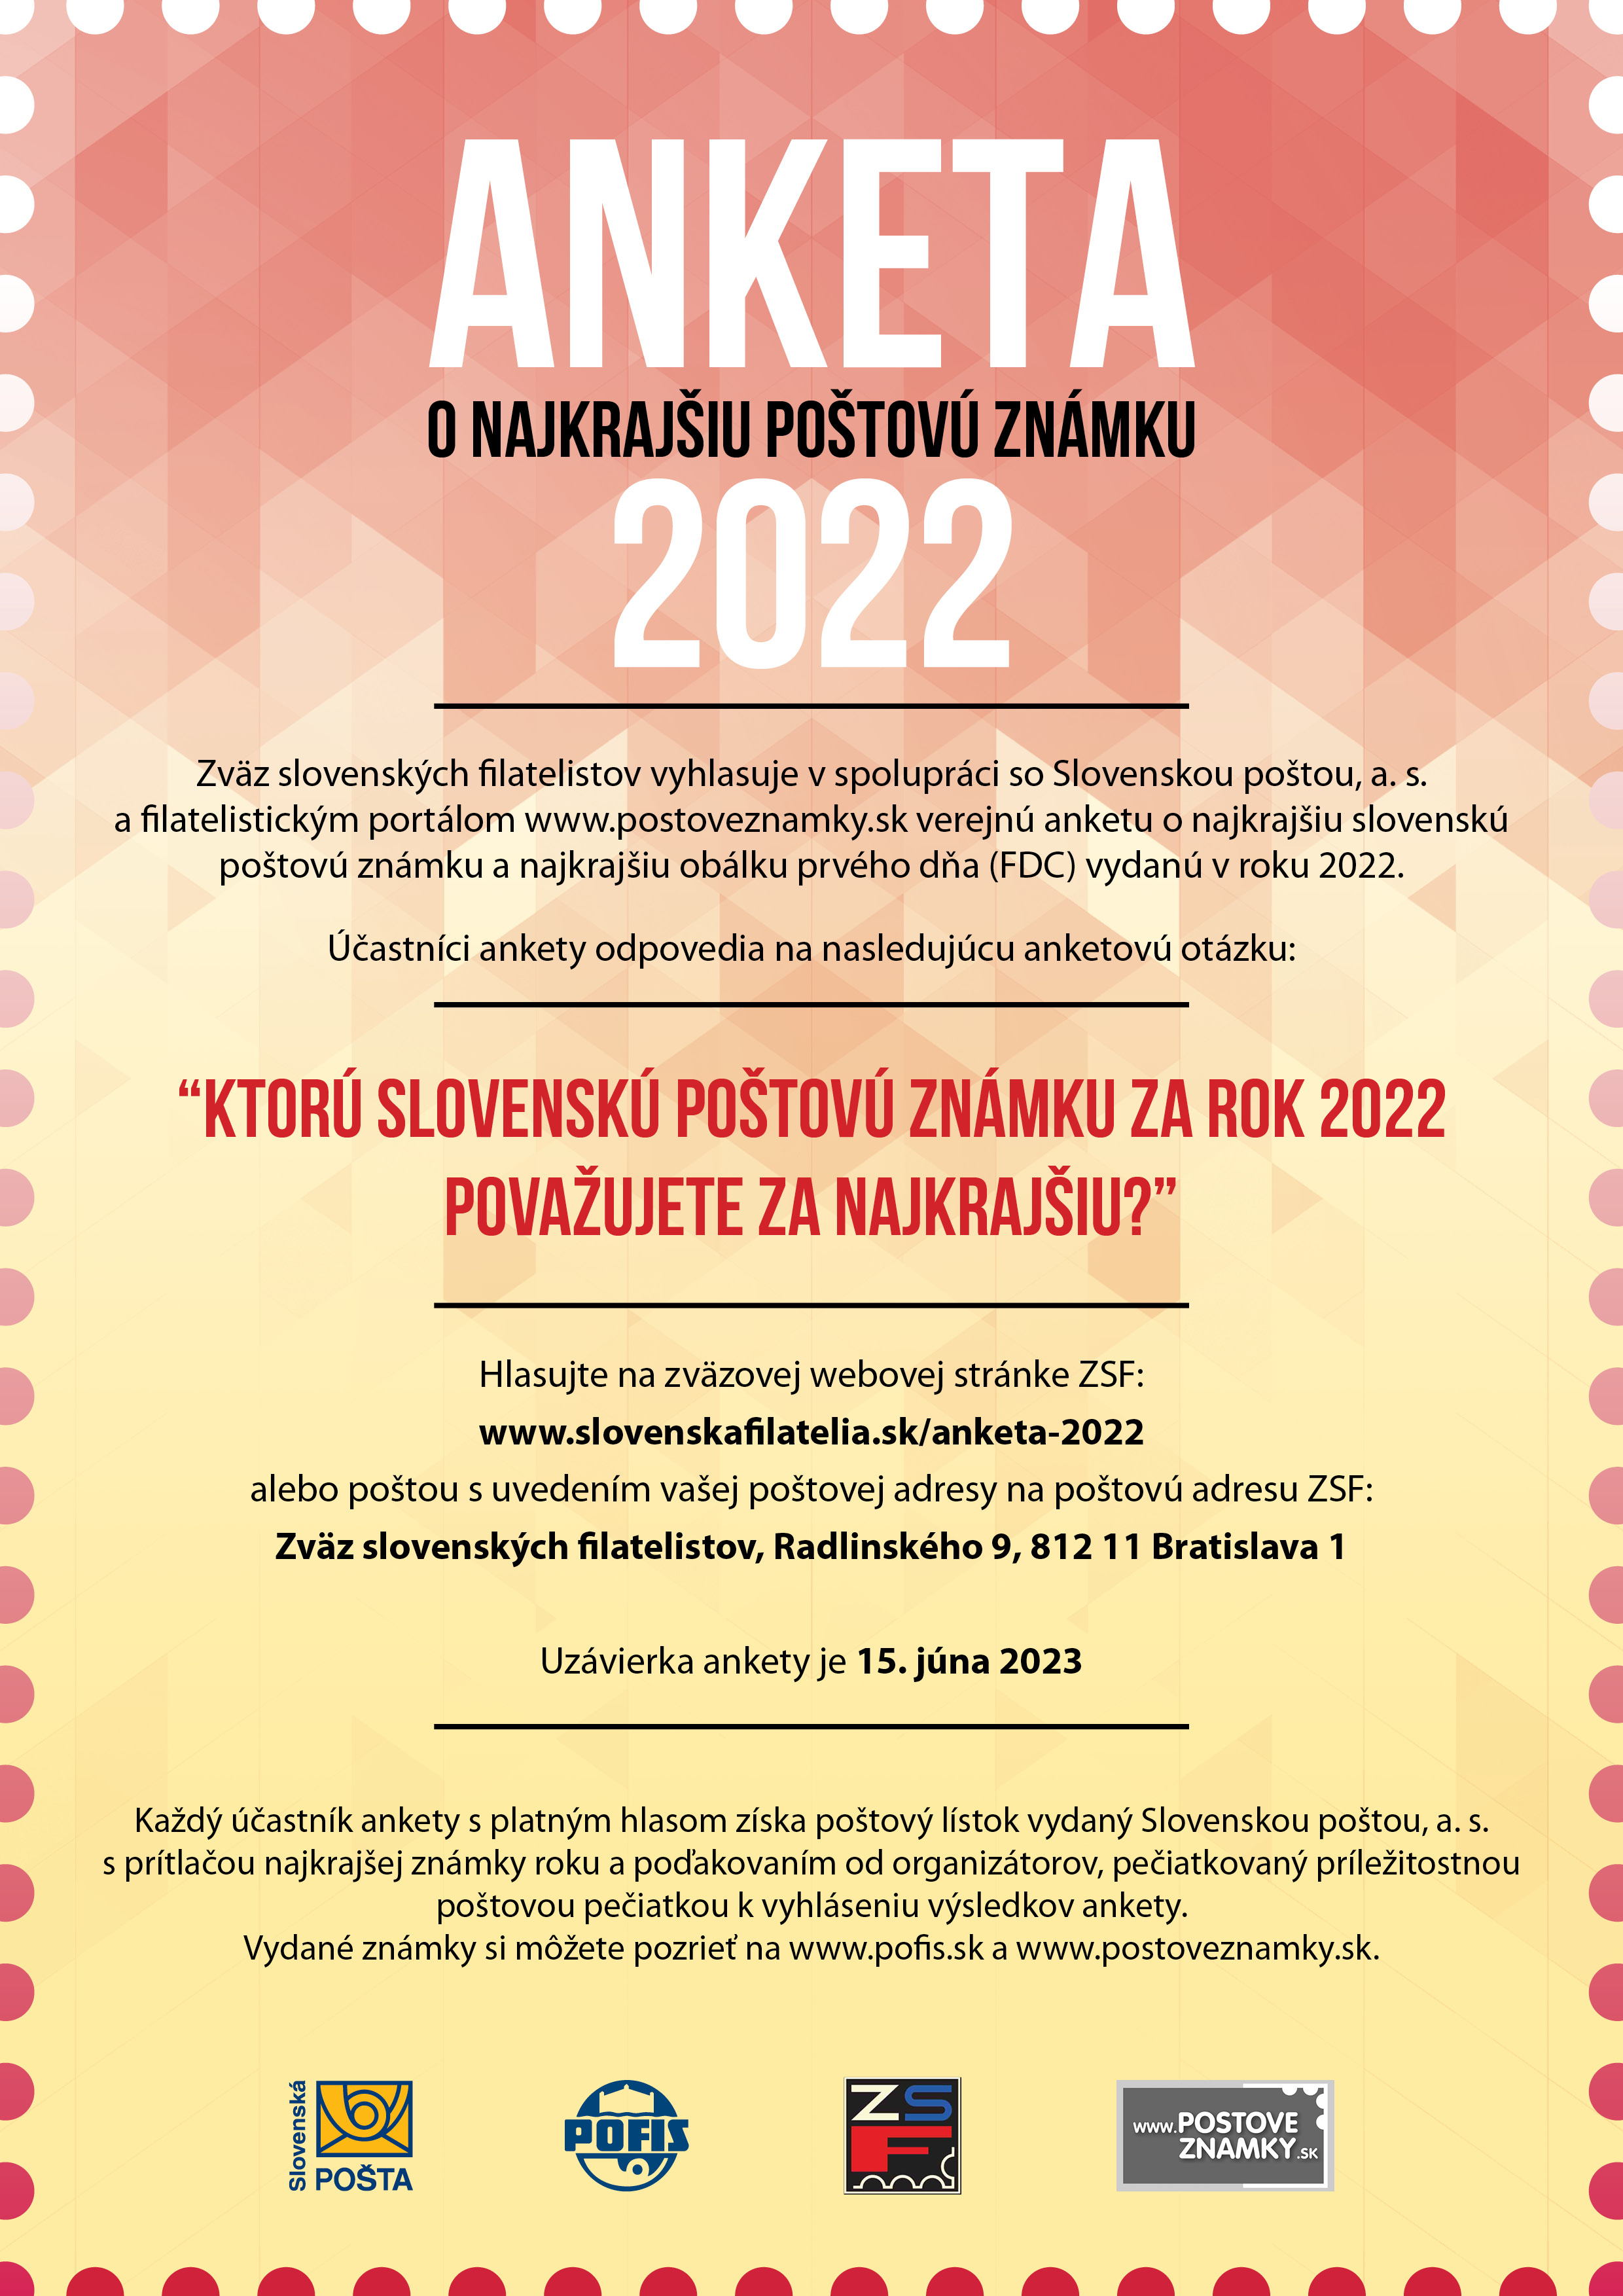 anketa 2022